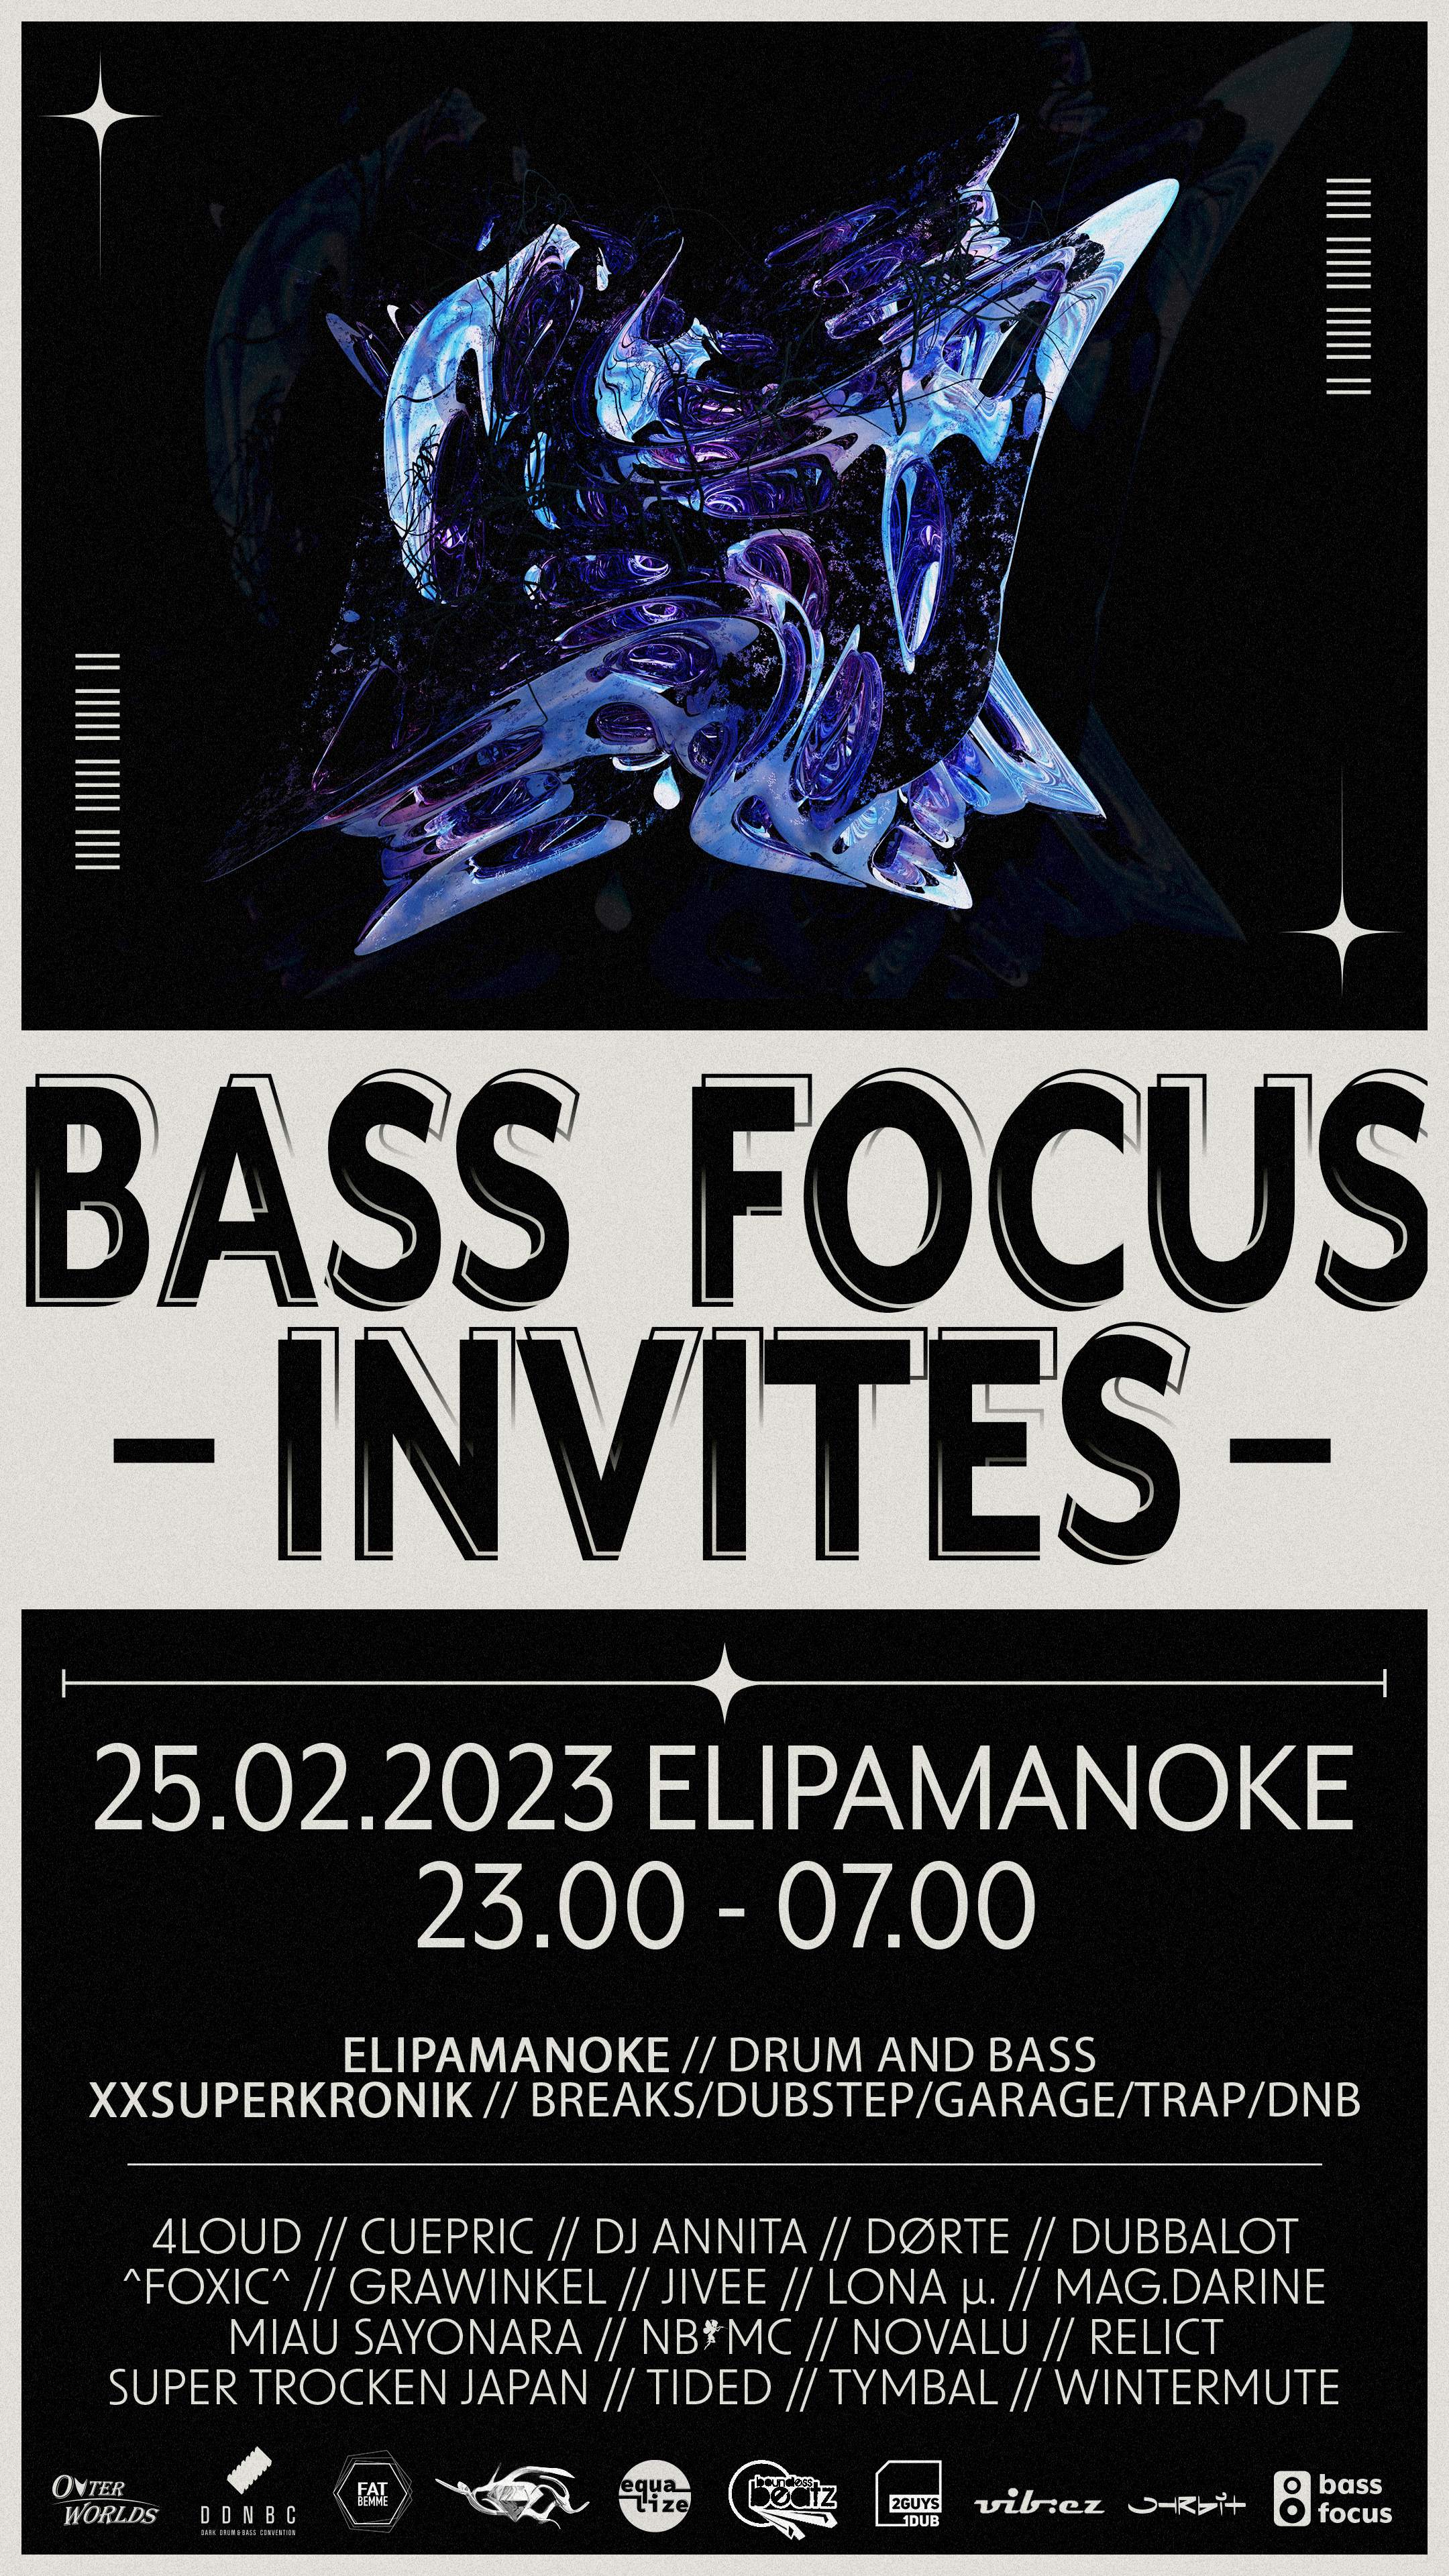 Bass Focus Invites - フライヤー表